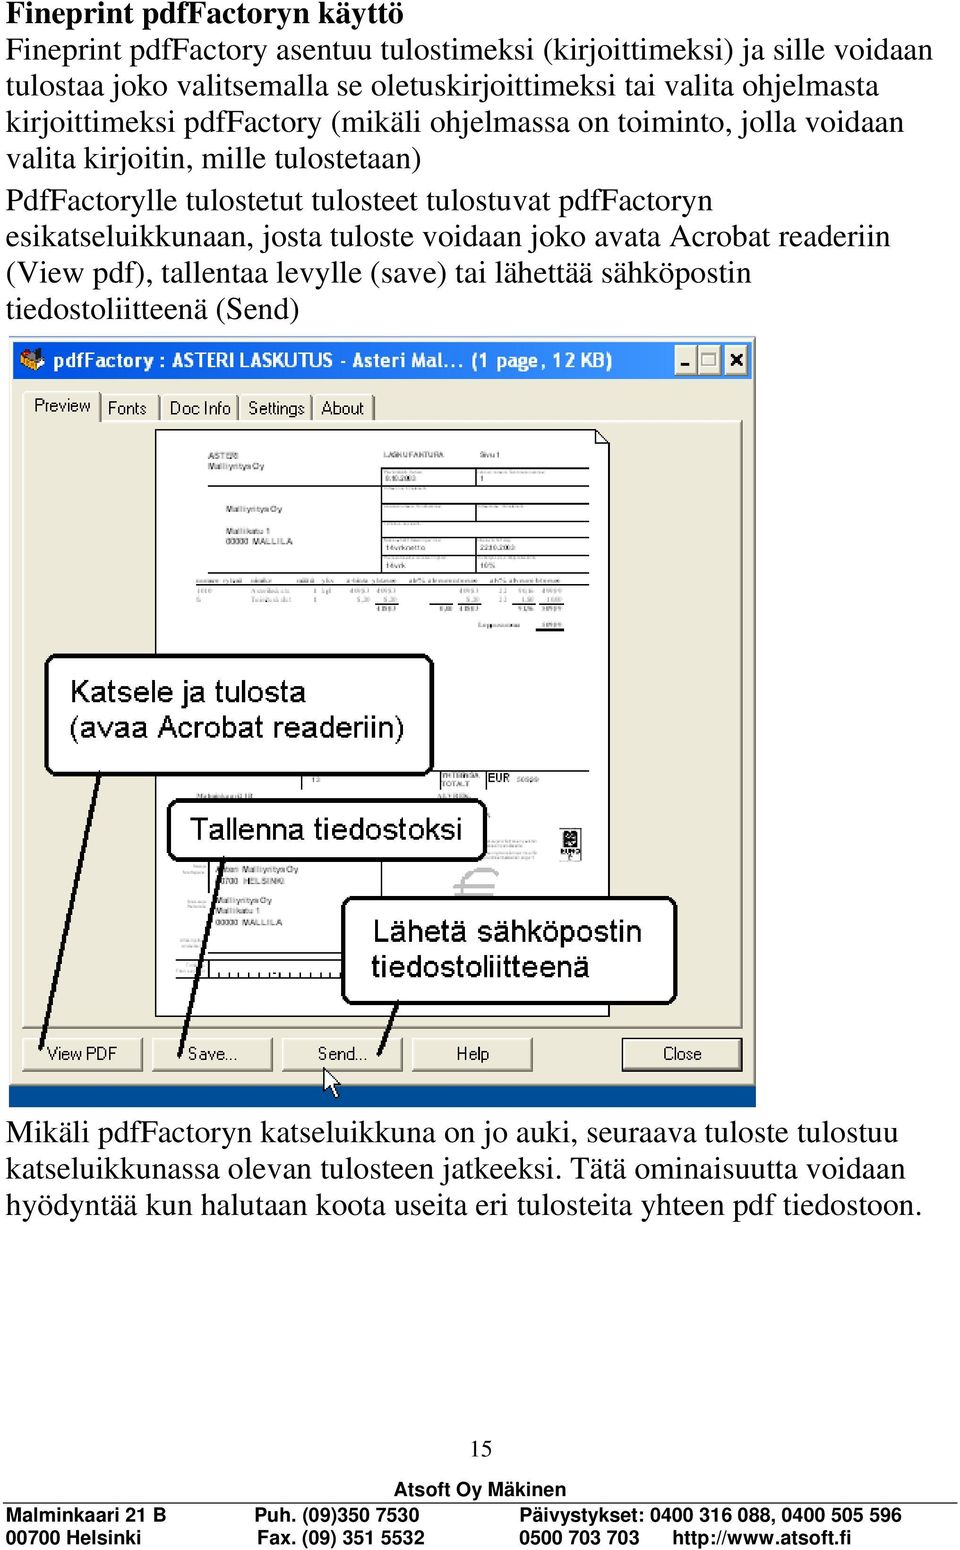 esikatseluikkunaan, josta tuloste voidaan joko avata Acrobat readeriin (View pdf), tallentaa levylle (save) tai lähettää sähköpostin tiedostoliitteenä (Send) Mikäli pdffactoryn